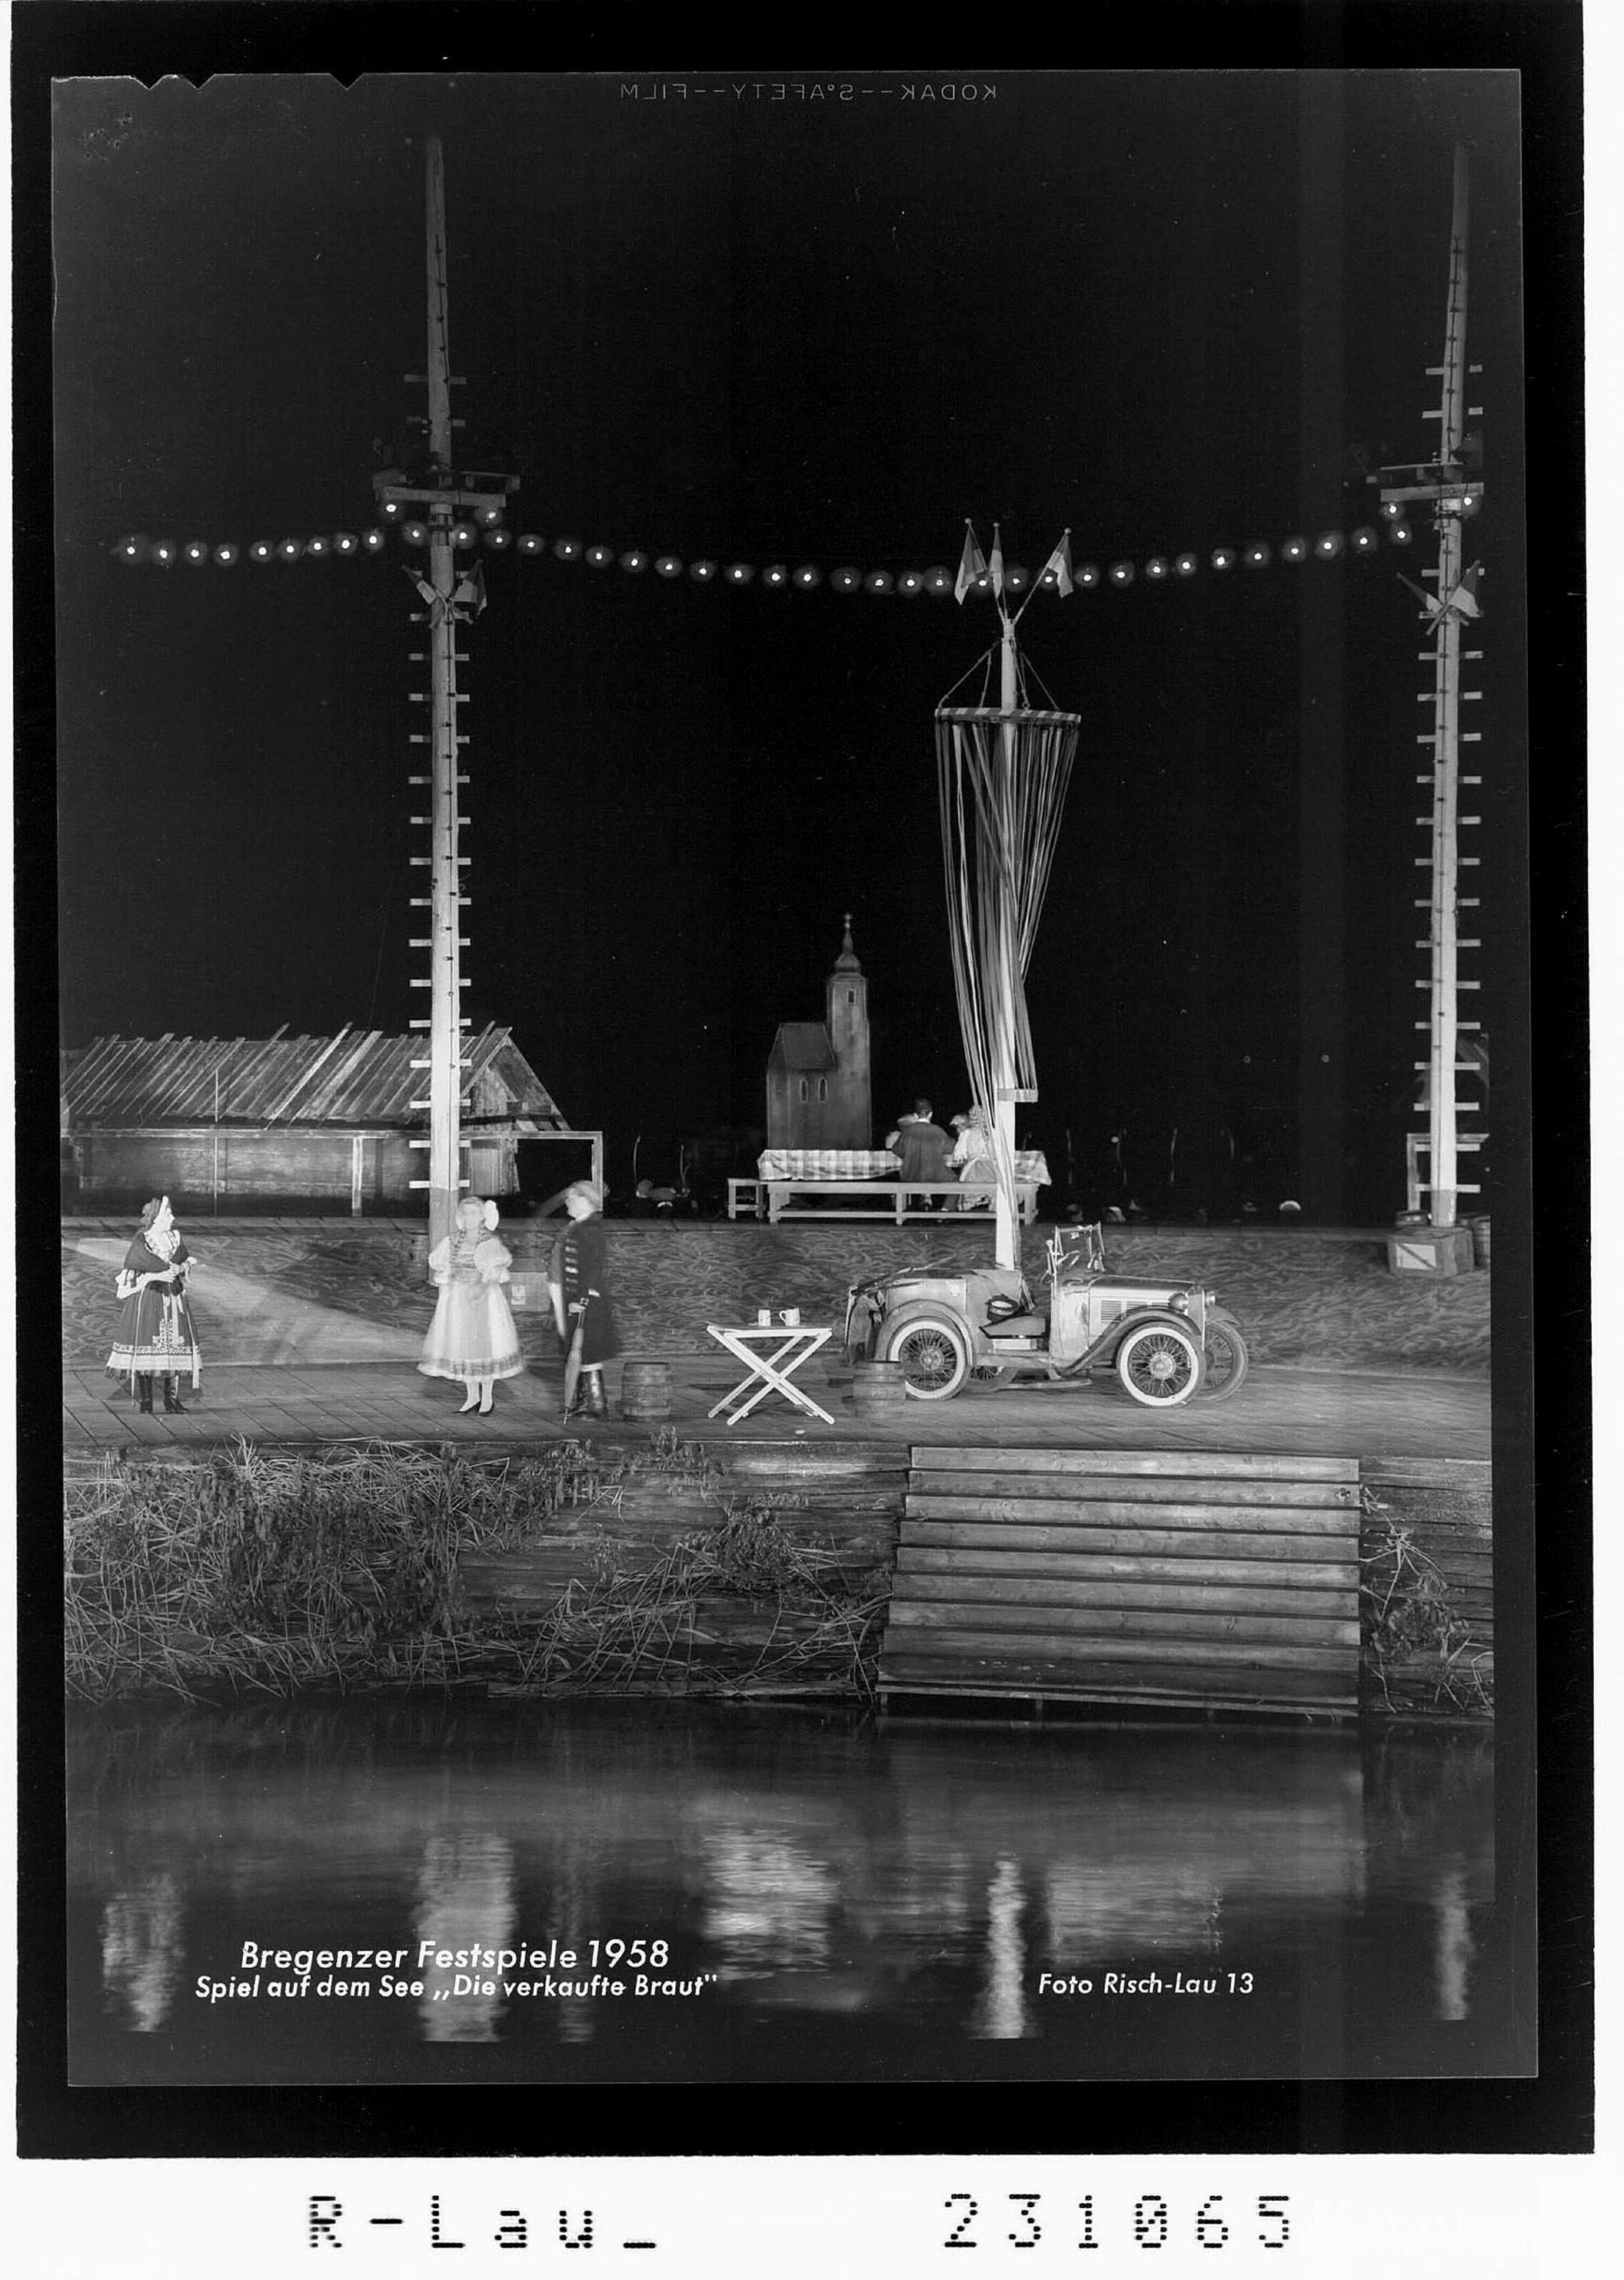 Bregenzer Festspiele 1958 / Spiel auf dem See - Die verkaufte Braut></div>


    <hr>
    <div class=